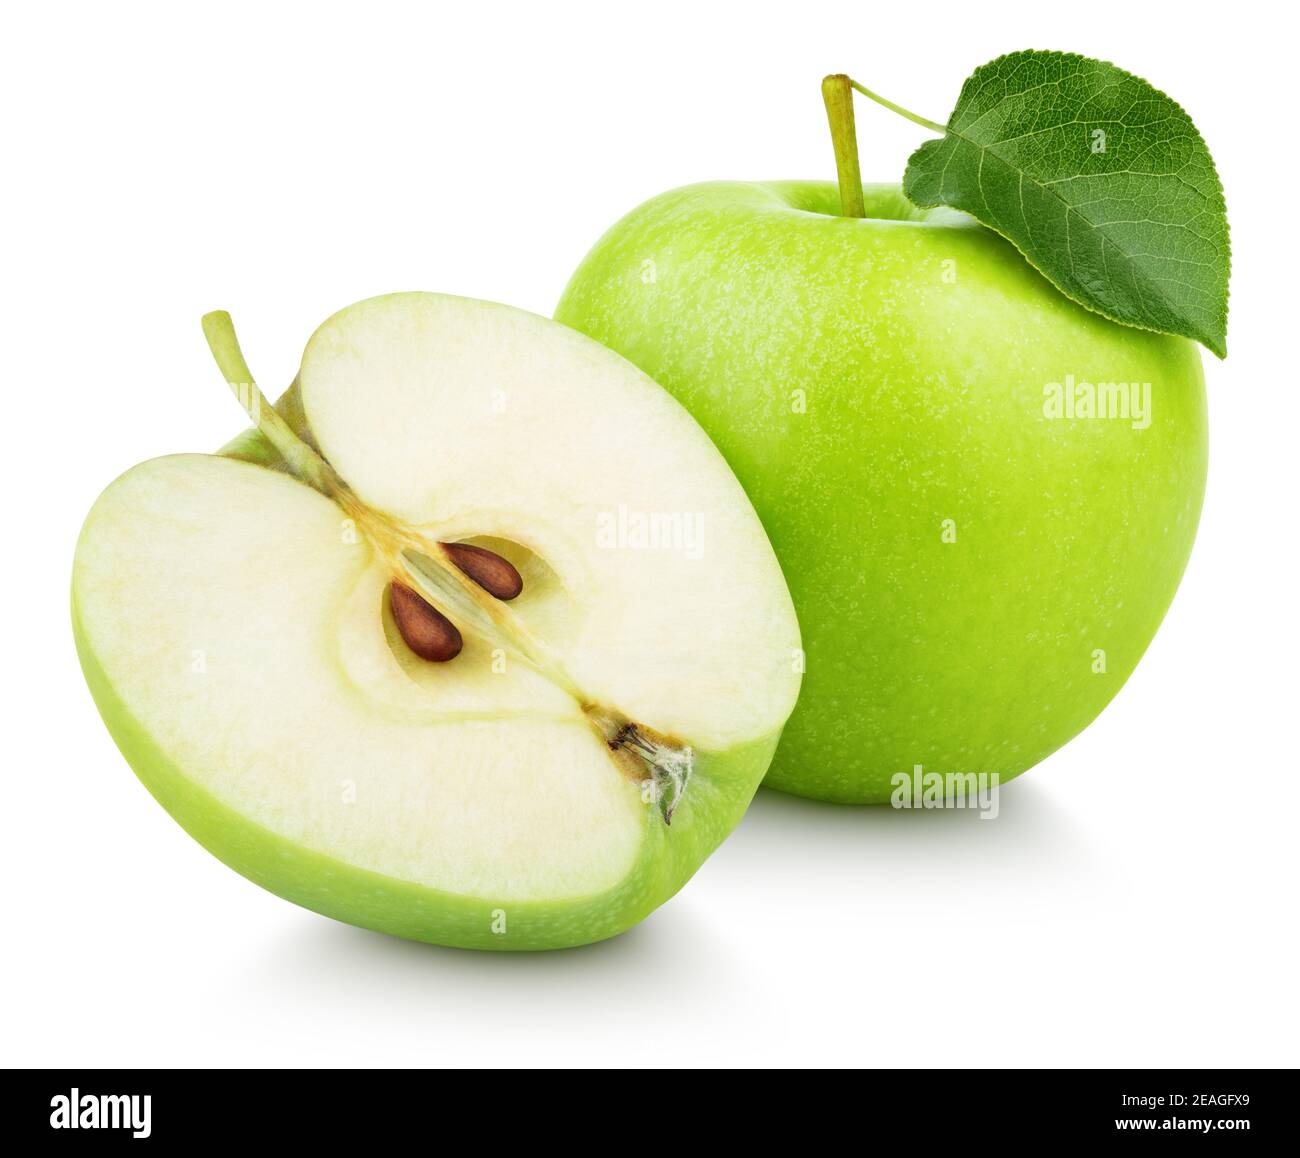 Mela verde matura con mezzo di mela e foglia verde di mela isolato su sfondo bianco. Mele e foglie con percorso di ritaglio Foto Stock